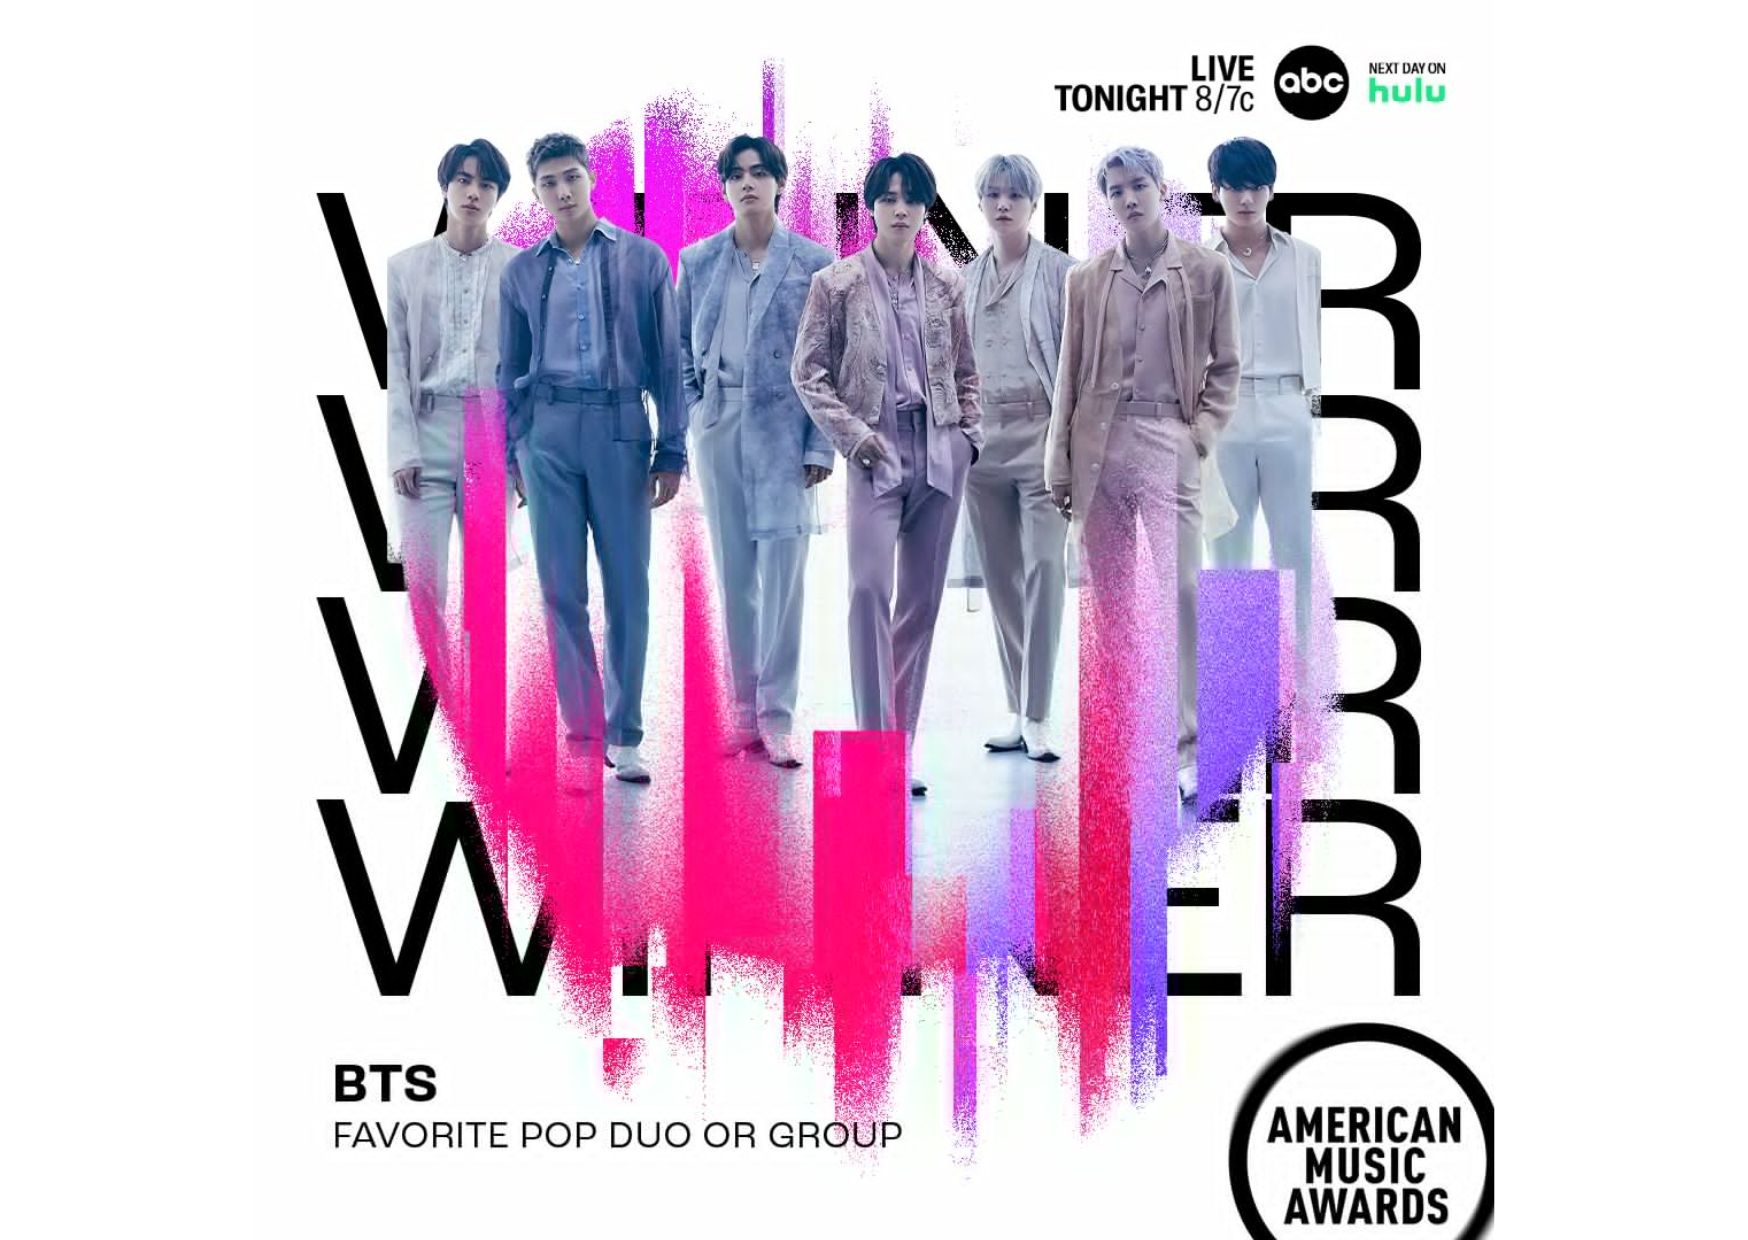 BTS Menjadi Artis Pertama Yang Memenangkan Penghargaan Musik Amerika Untuk Grup Pop Favorit 